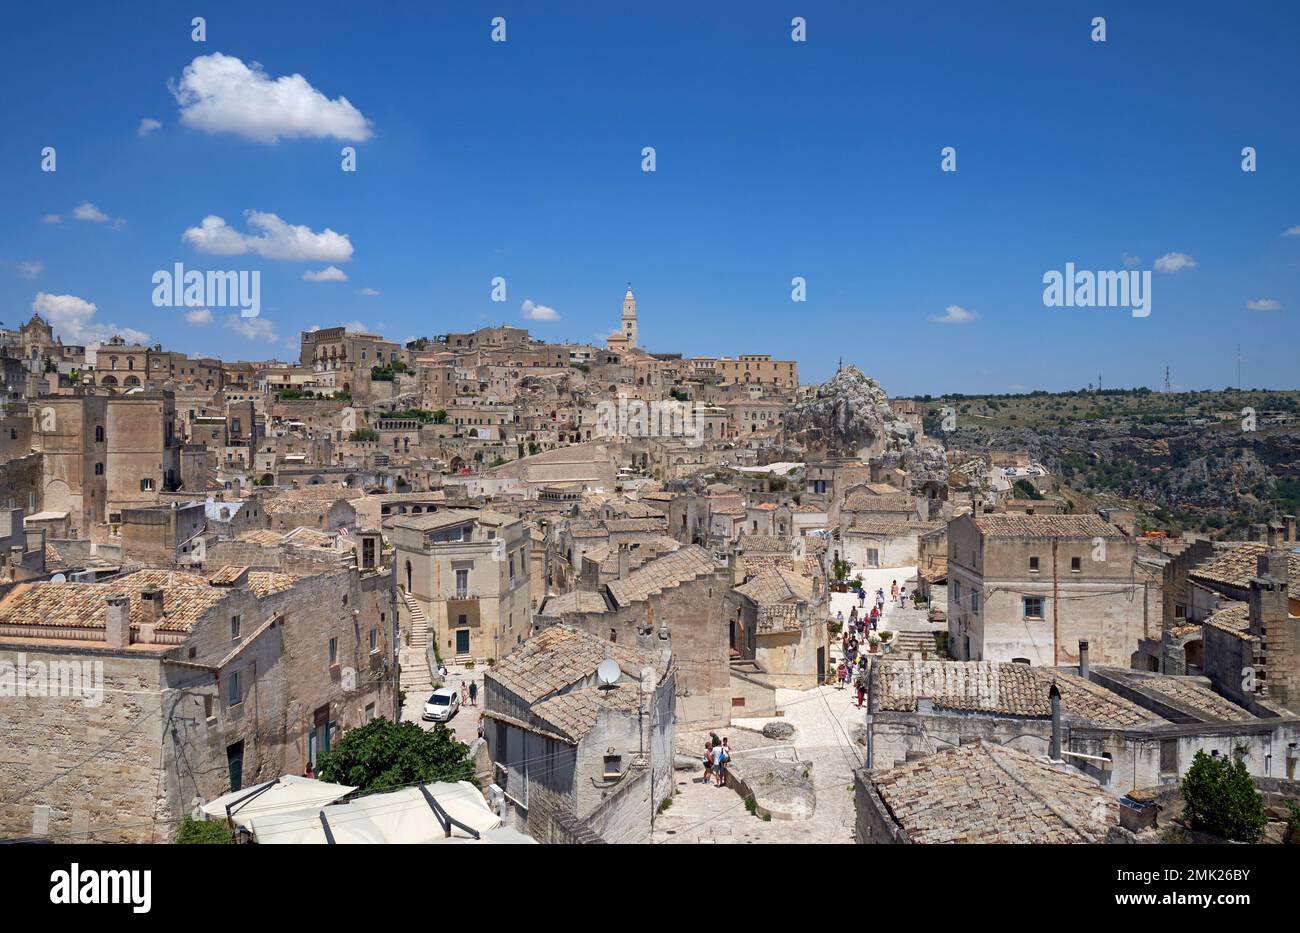 The Sassi (ancient town) of Matera, Basilicata, Italy. Stock Photo